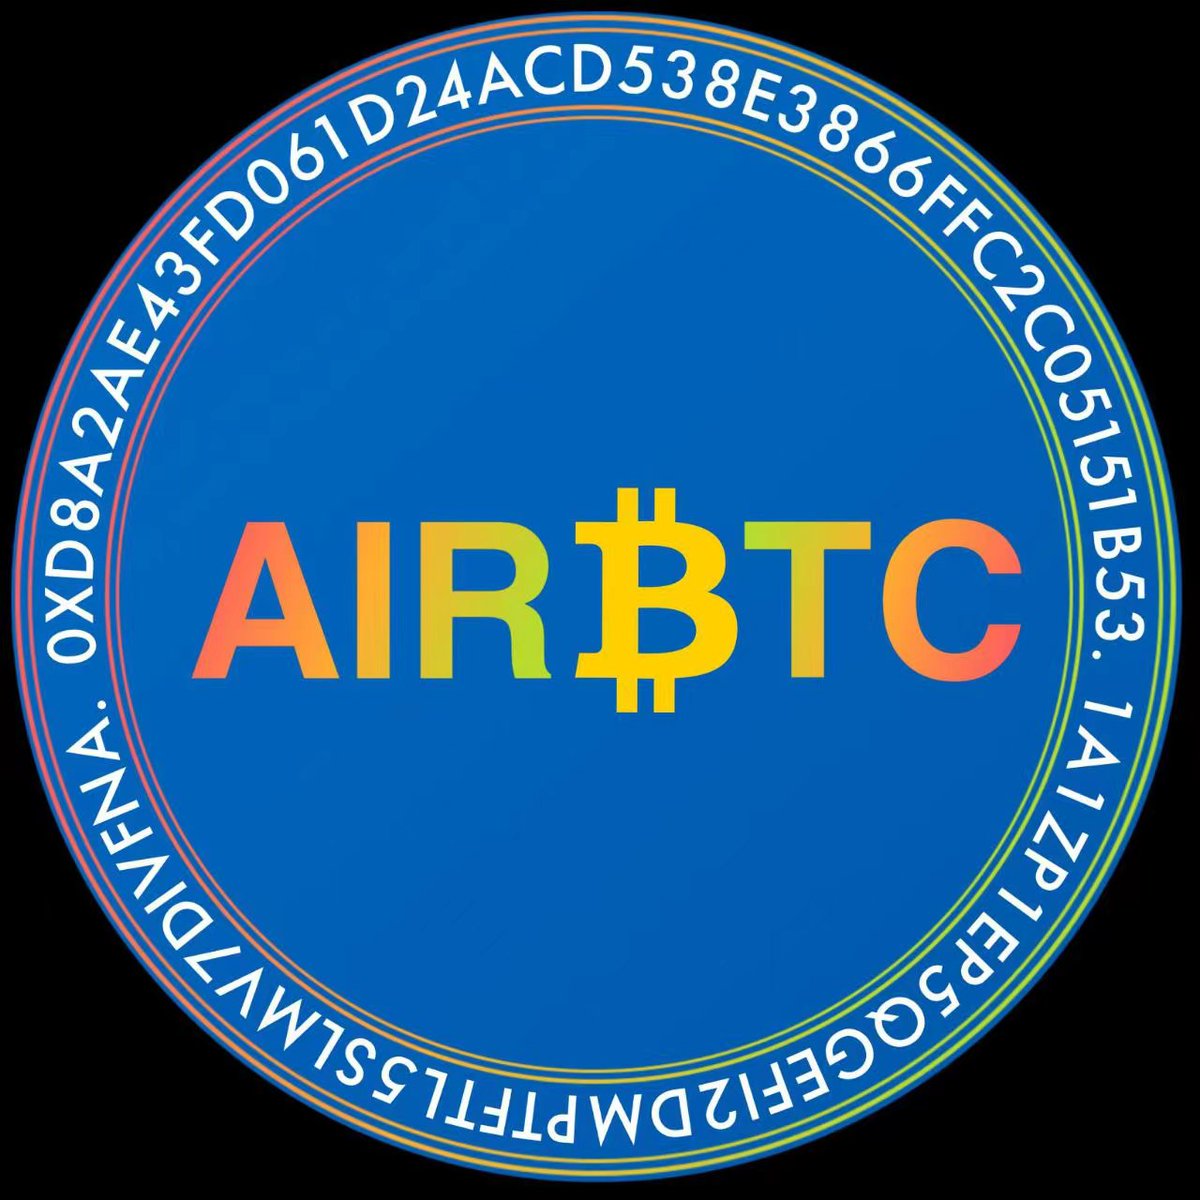 Air土著村村民们，早上好！
#AirCoin #Airluck #AIRDAO 
#AIRBTC #Aircash #BNB    
#BTC #bnb @AirCoinrealCN